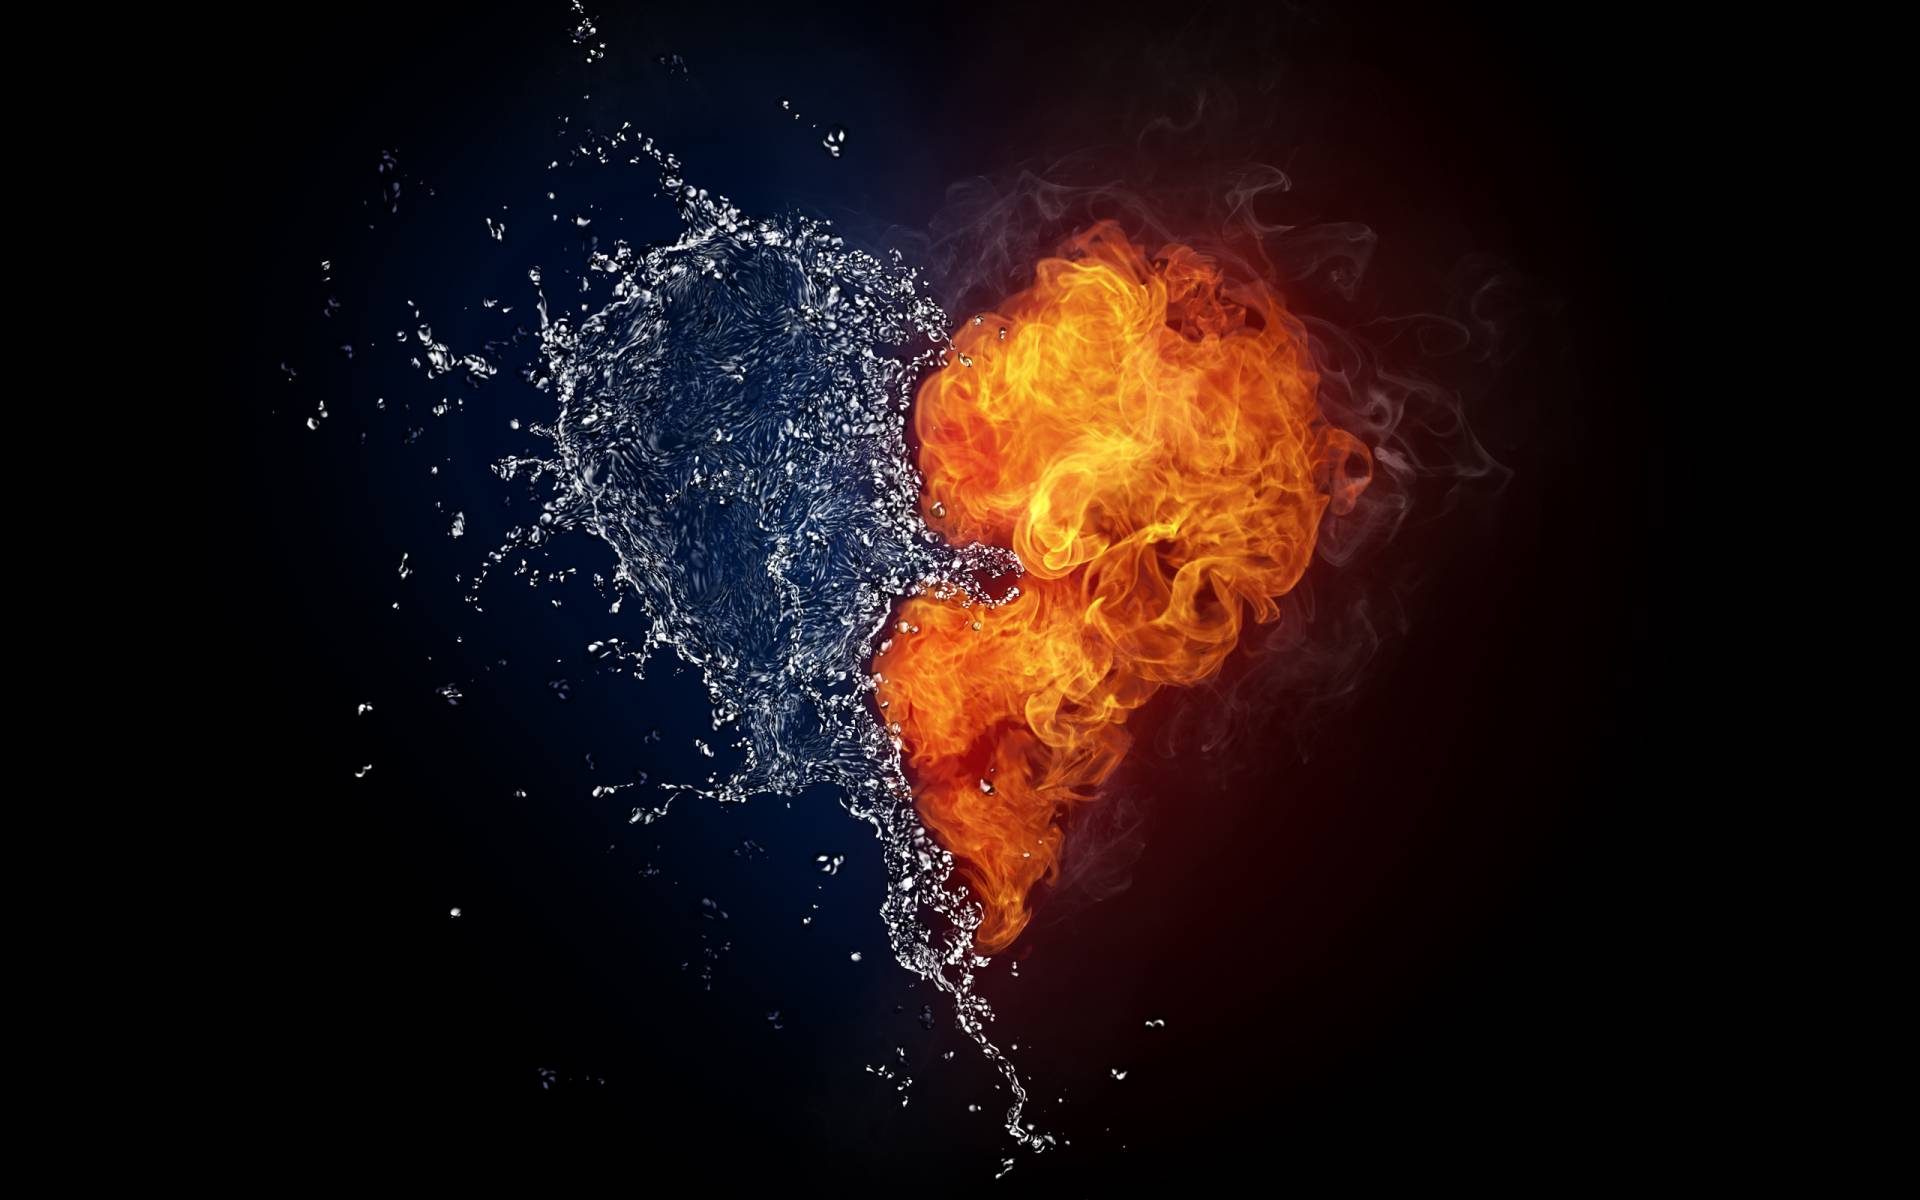 сердце из воды и огня HD фото картинки, обои рабочий стол